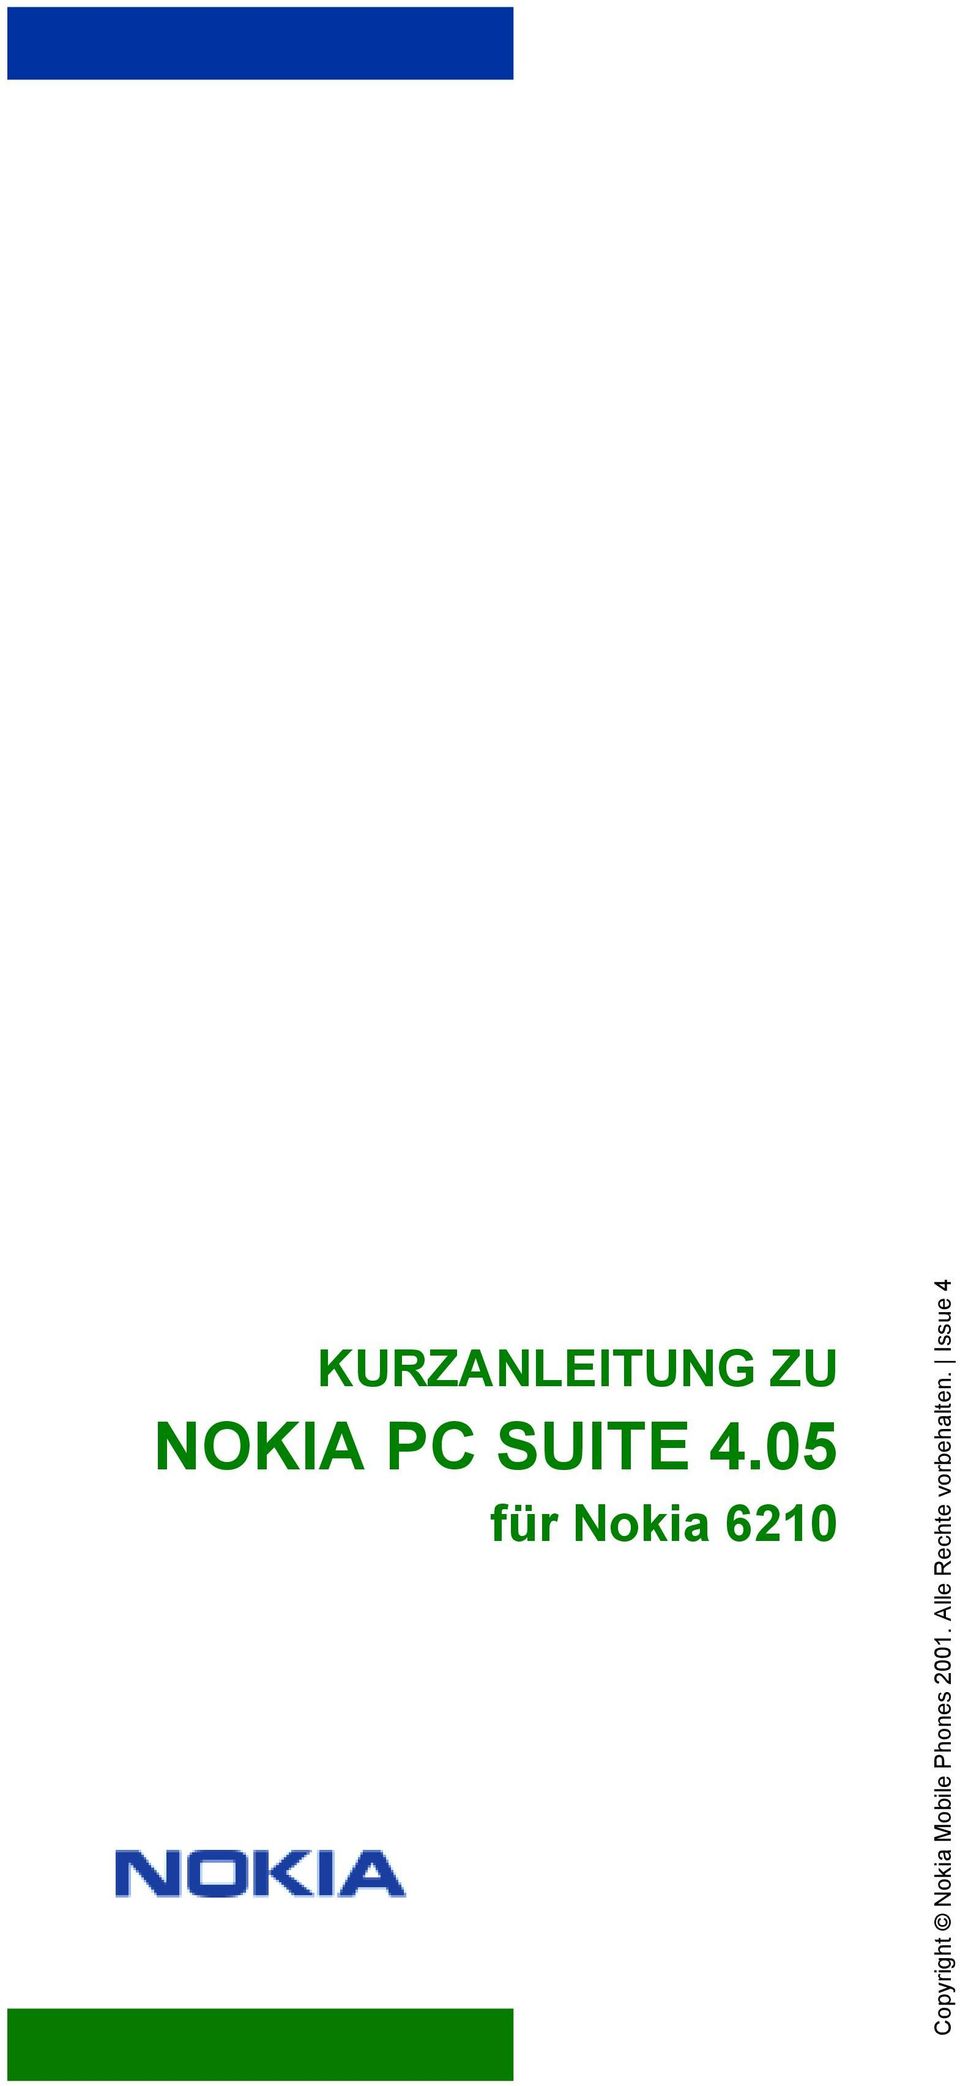 05 für Nokia 6210 Copyright